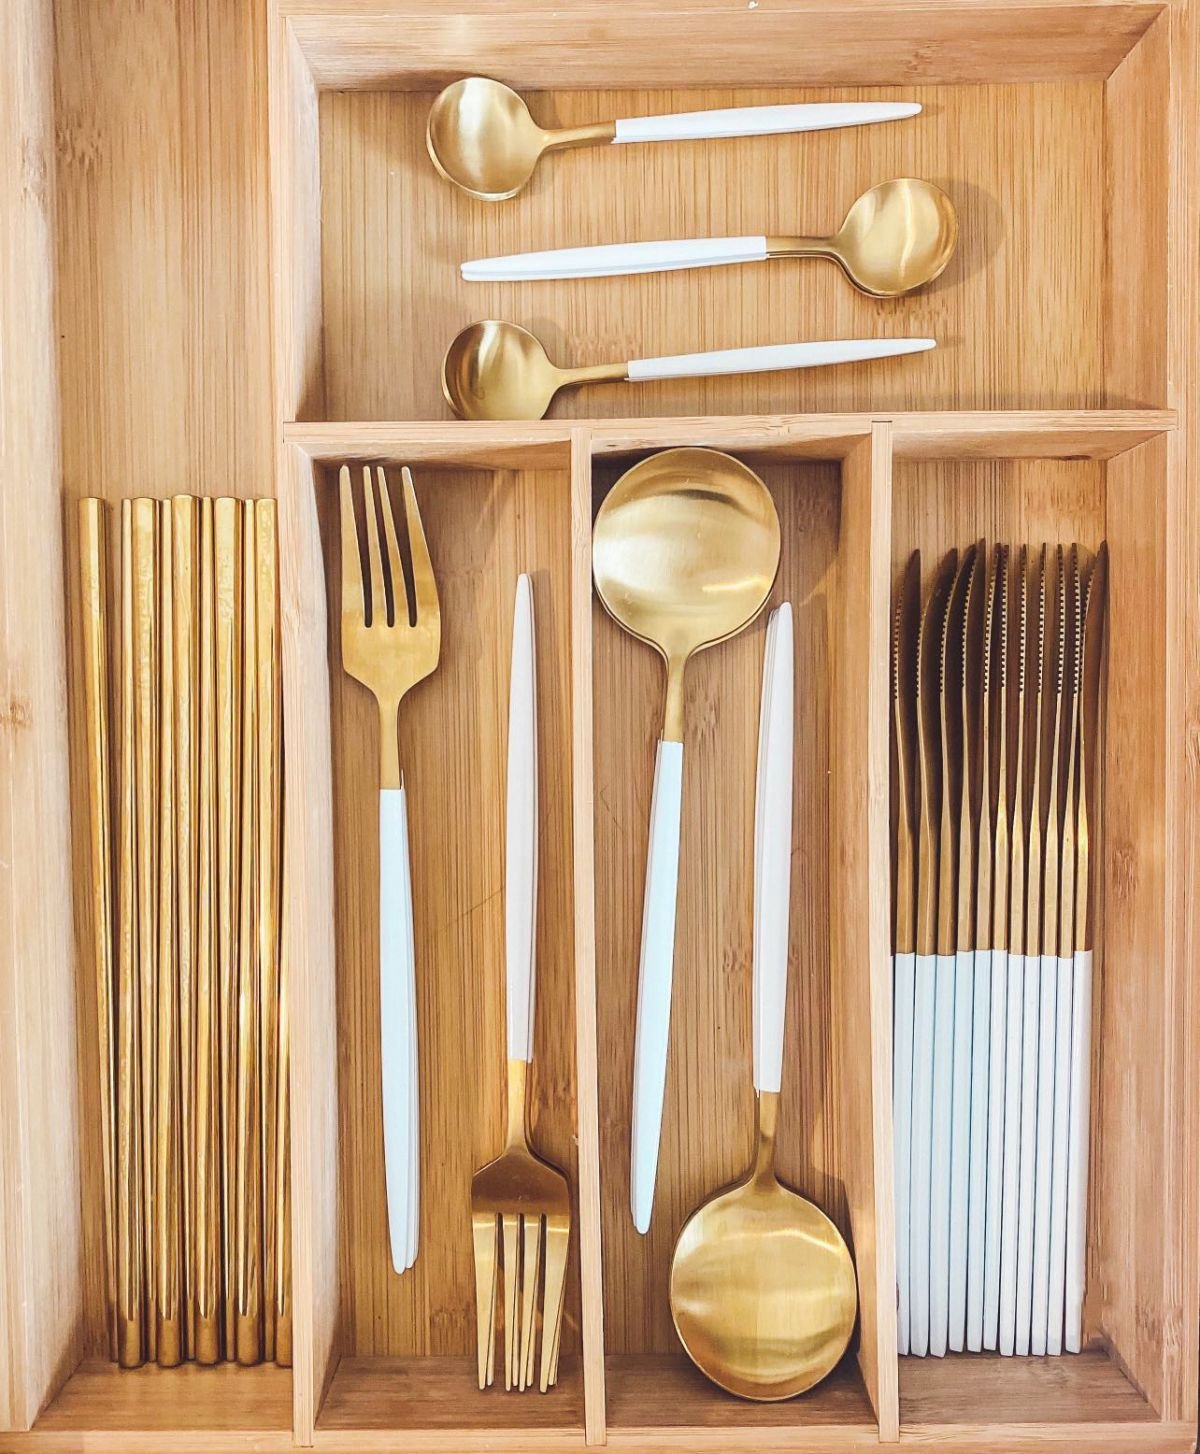 11 clever ways to organize kitchen utensils